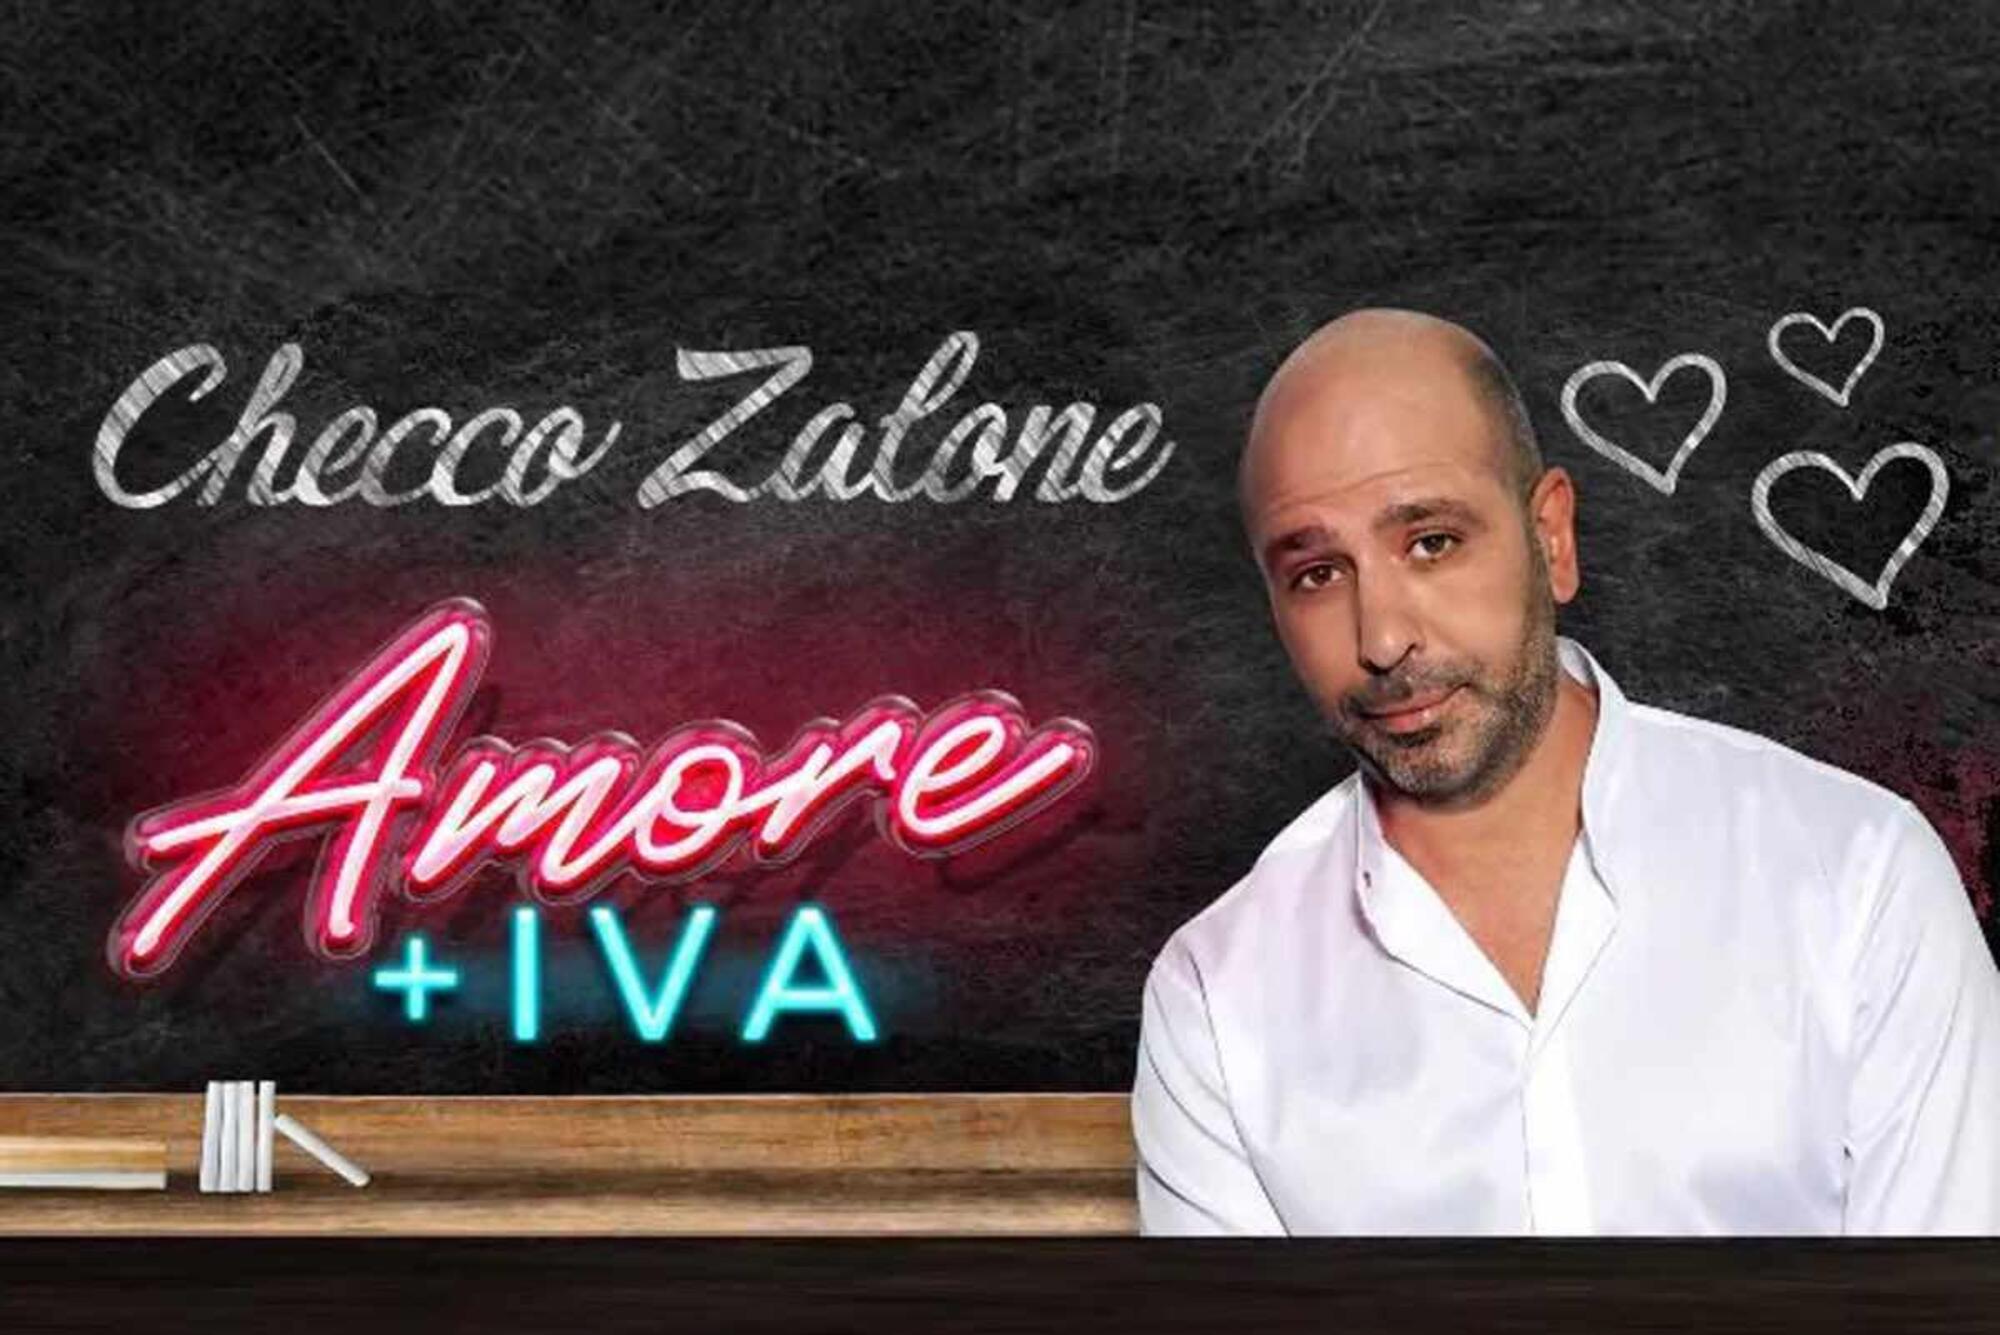 Checco Zalone Amore+Iva